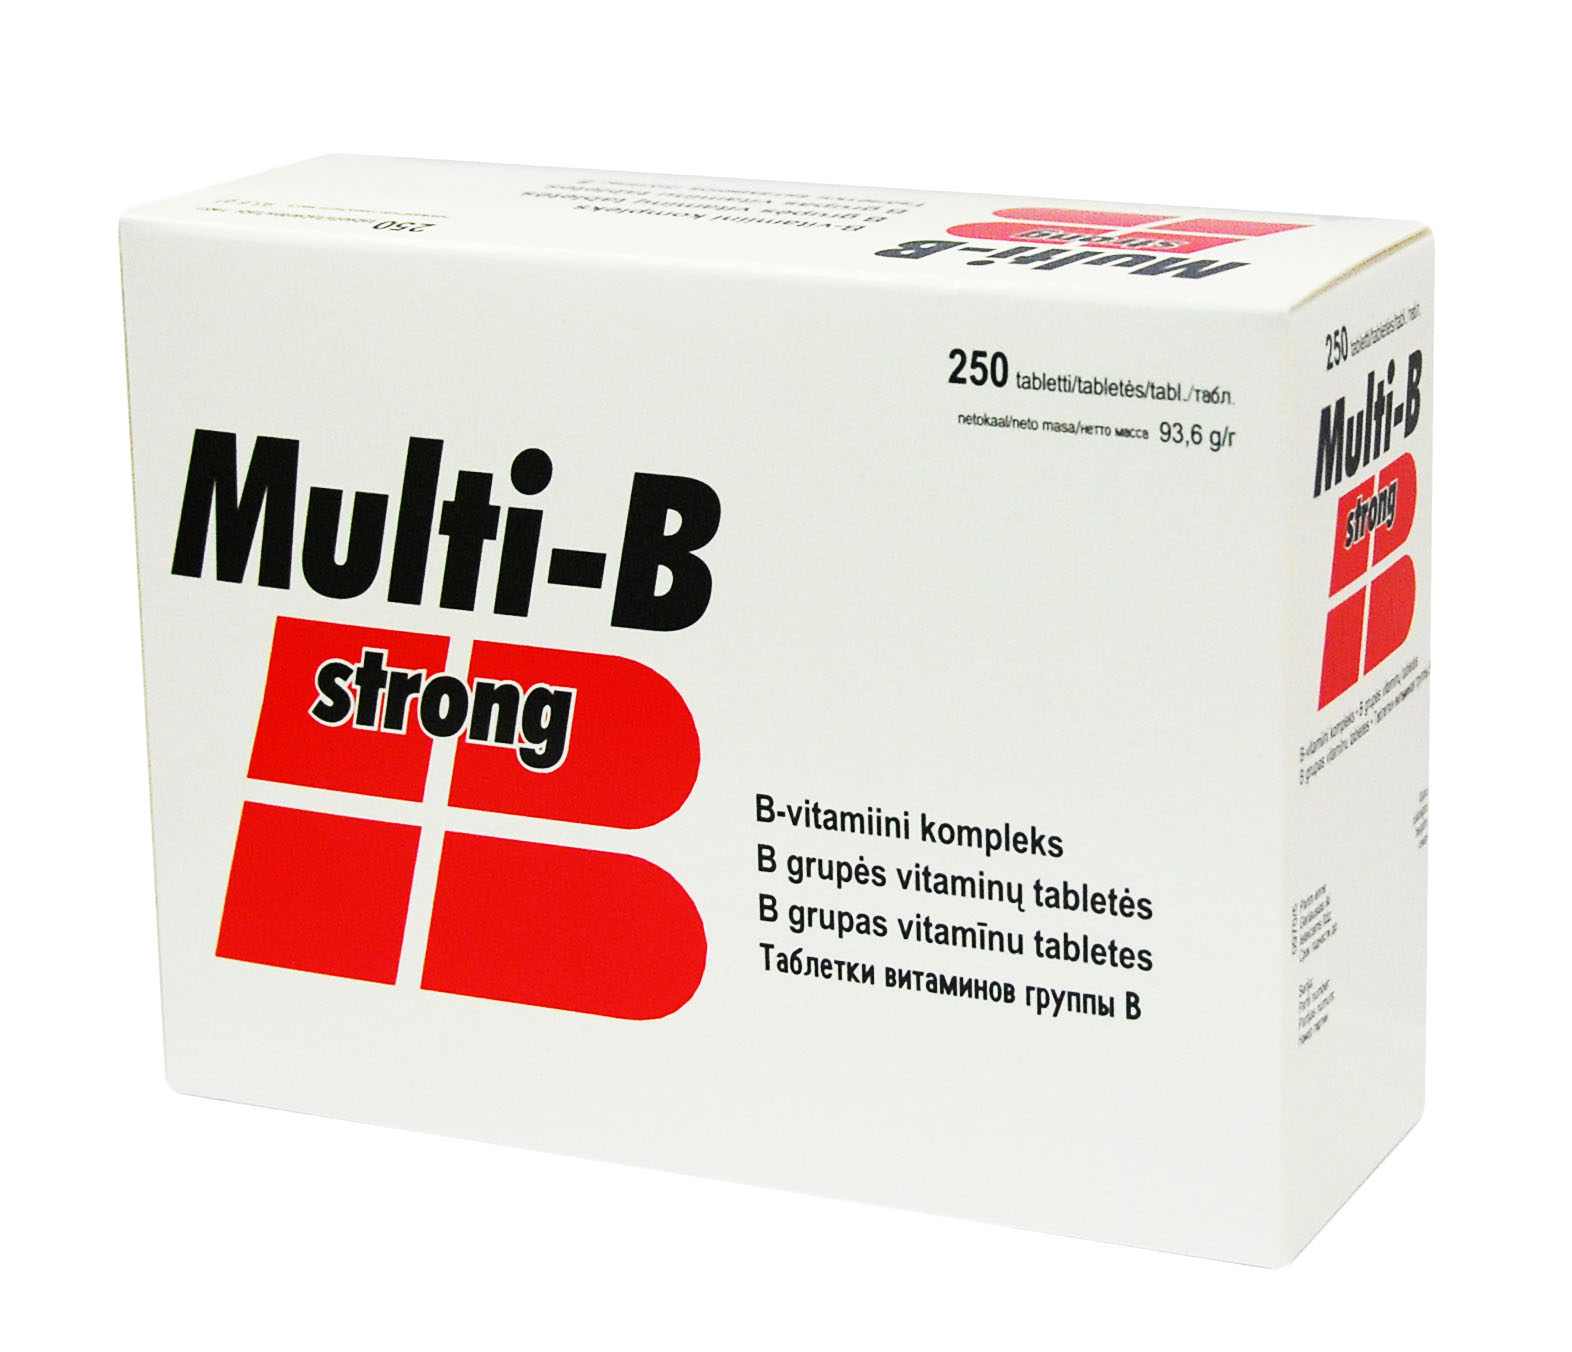 Силен таблетки купить. Strong таблетки. Multi-b strong. Мульти в Стронг. Таблетки n/b.